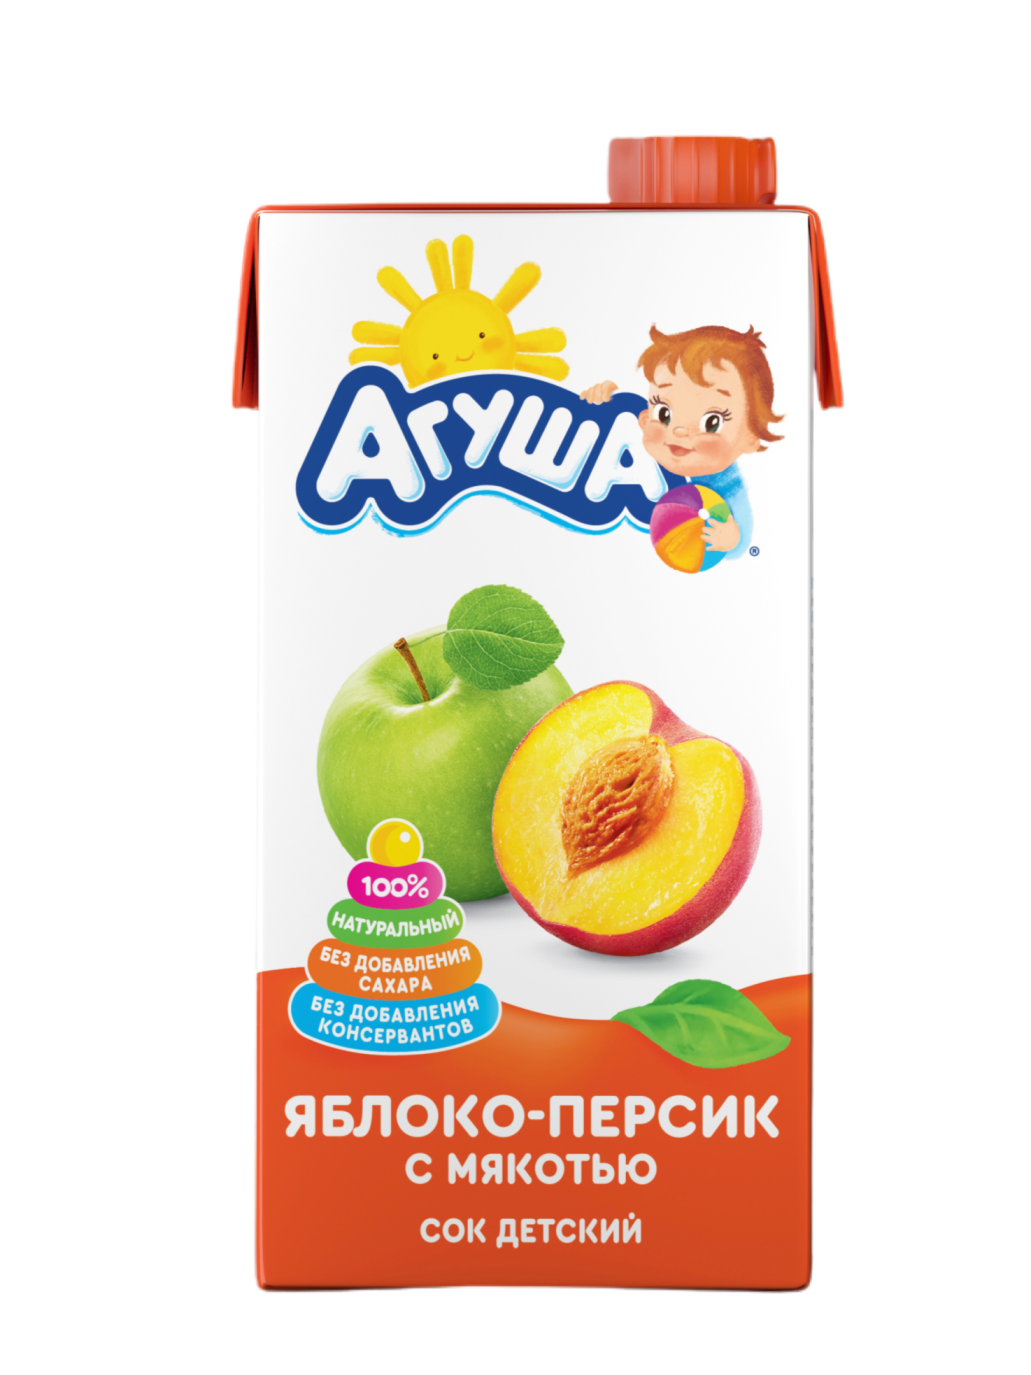 Сок Агуша яблоко-персик с мякотью 0,5л